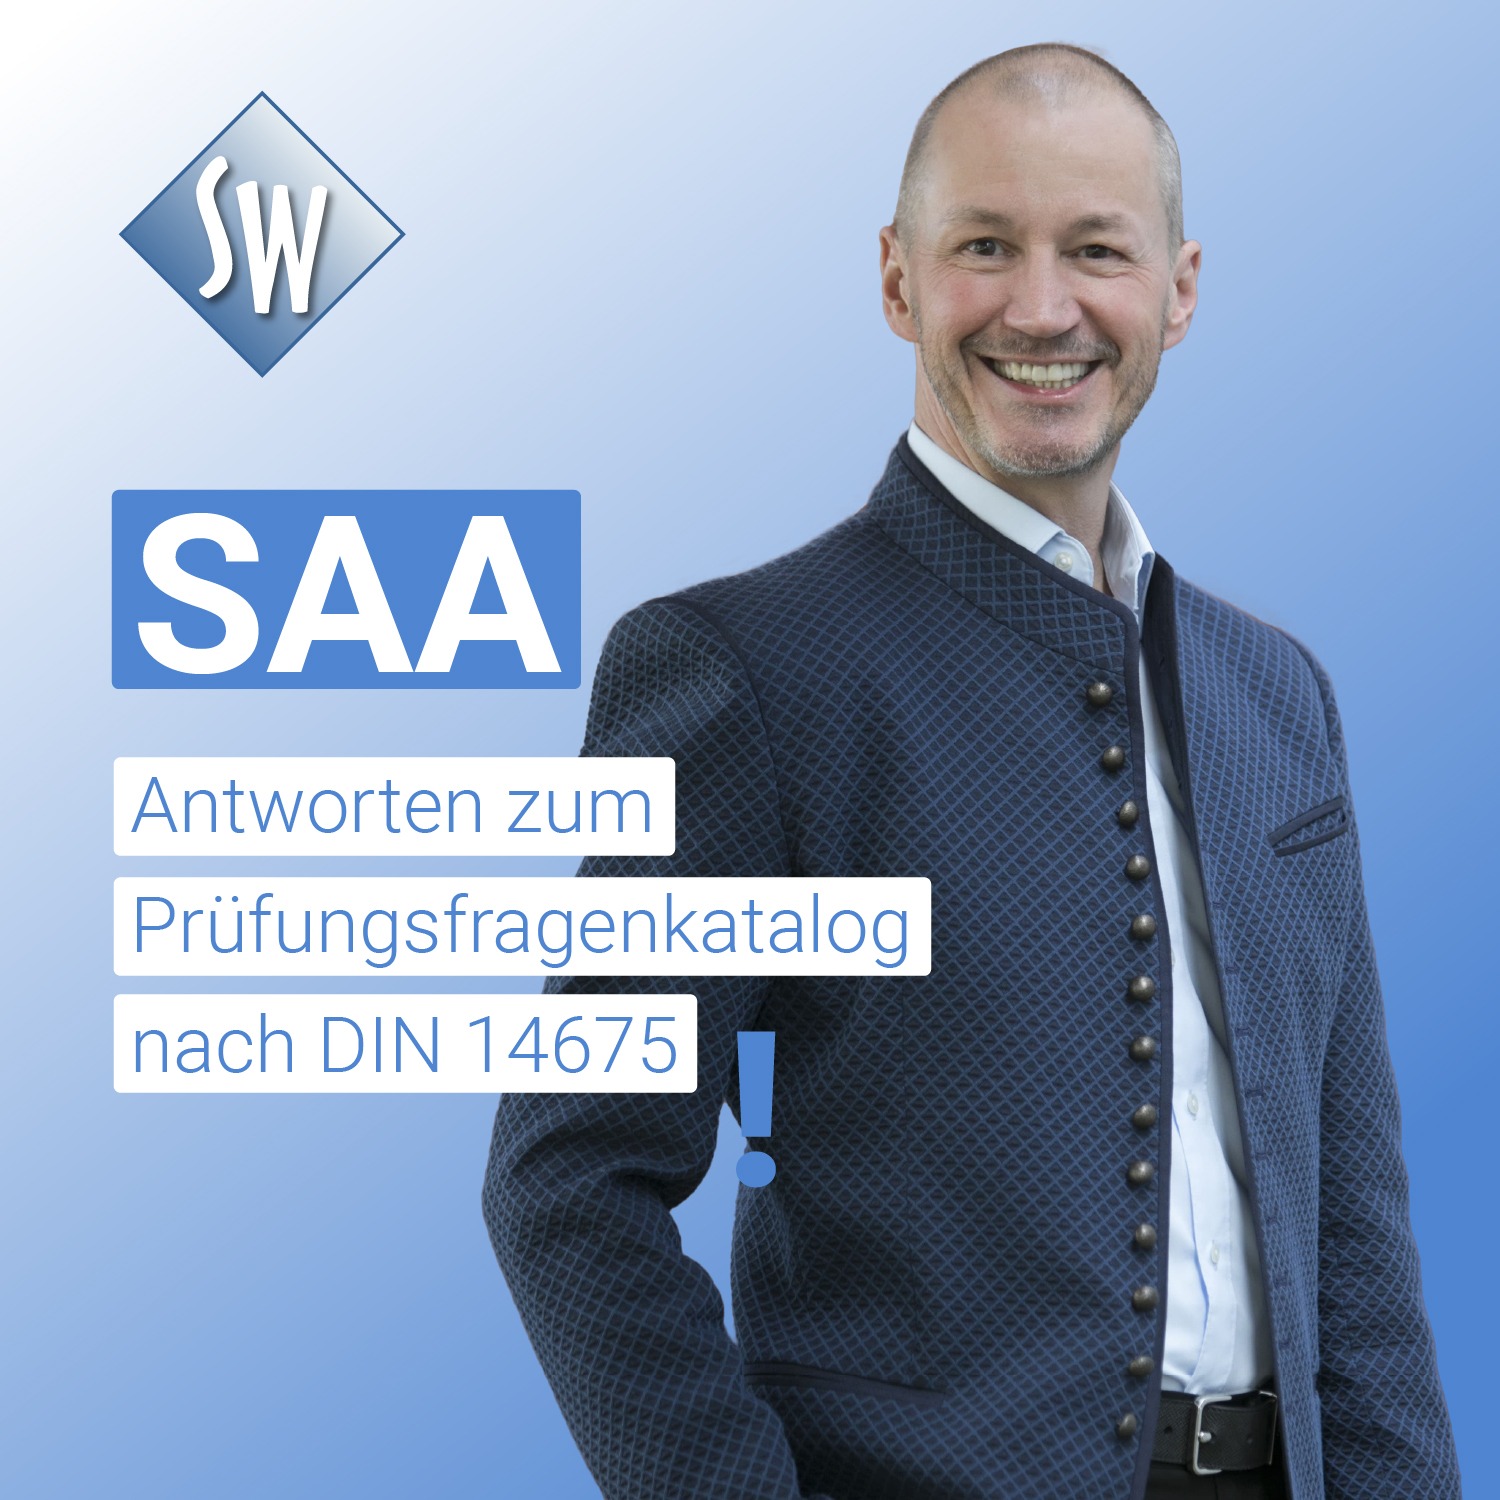 SAA Antworten zum Prüfungsfragenkatalog nach DIN 14675. Stephan Wenzel - Planung, Betrieb und Instandhaltung von Sprachalarmanlagen.